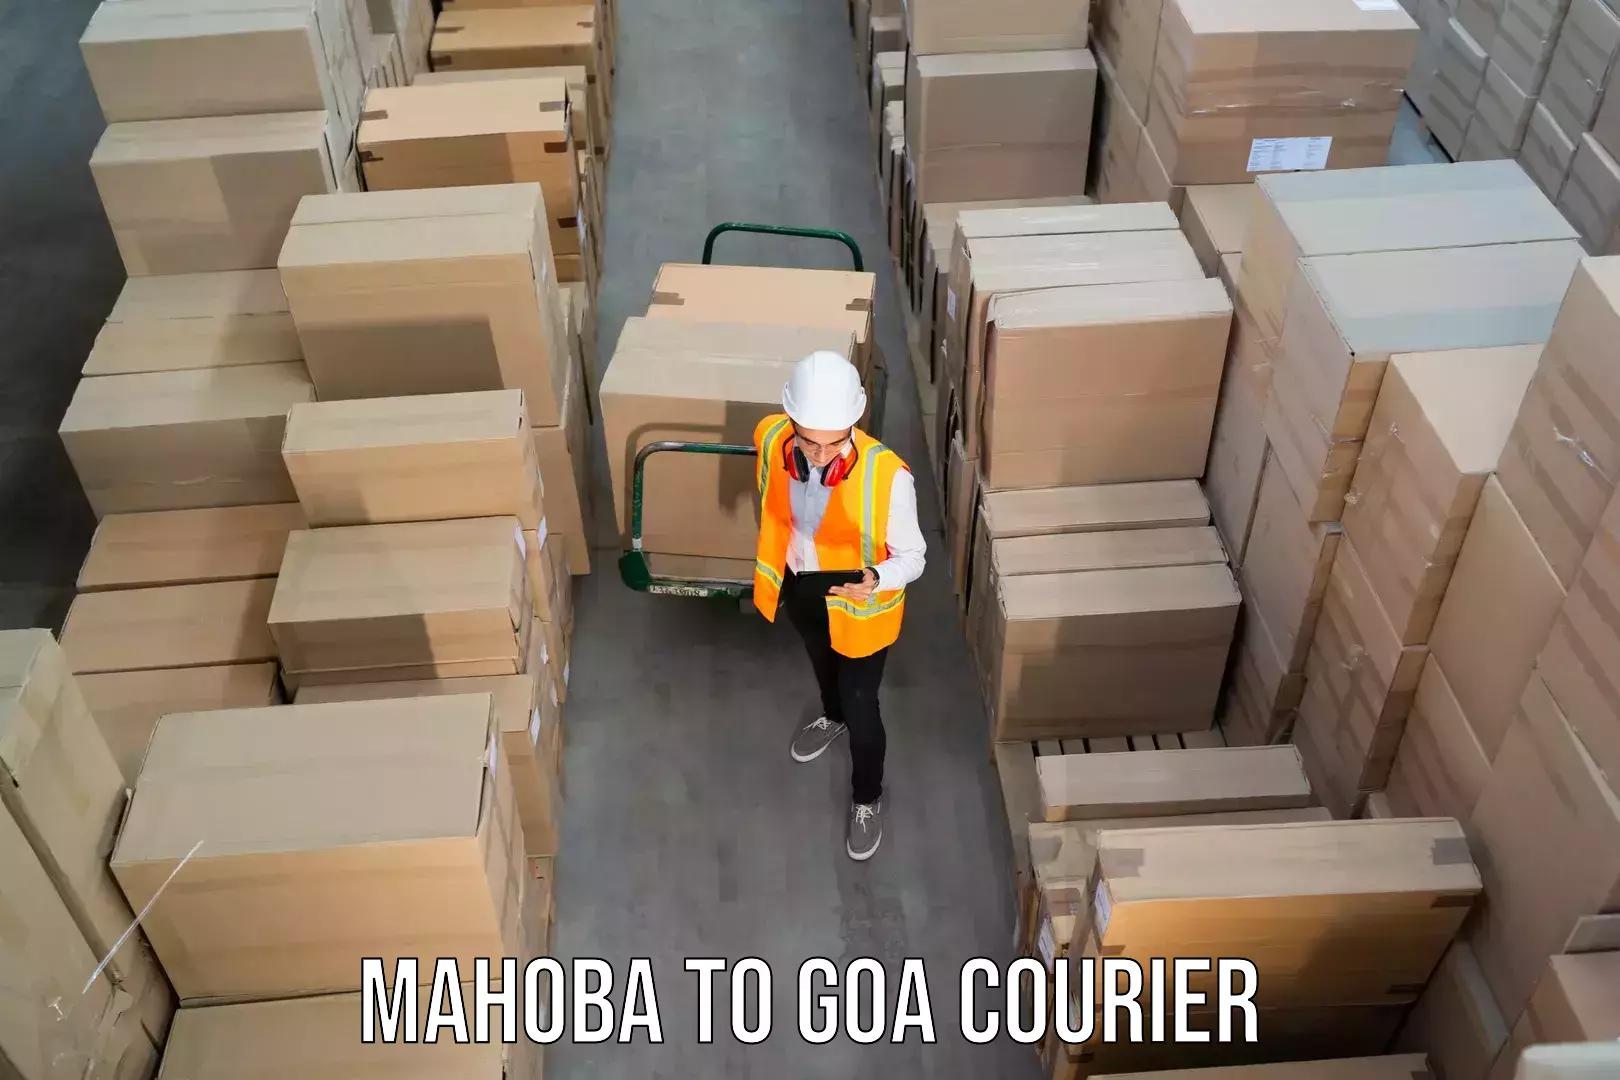 Quality courier services Mahoba to Ponda